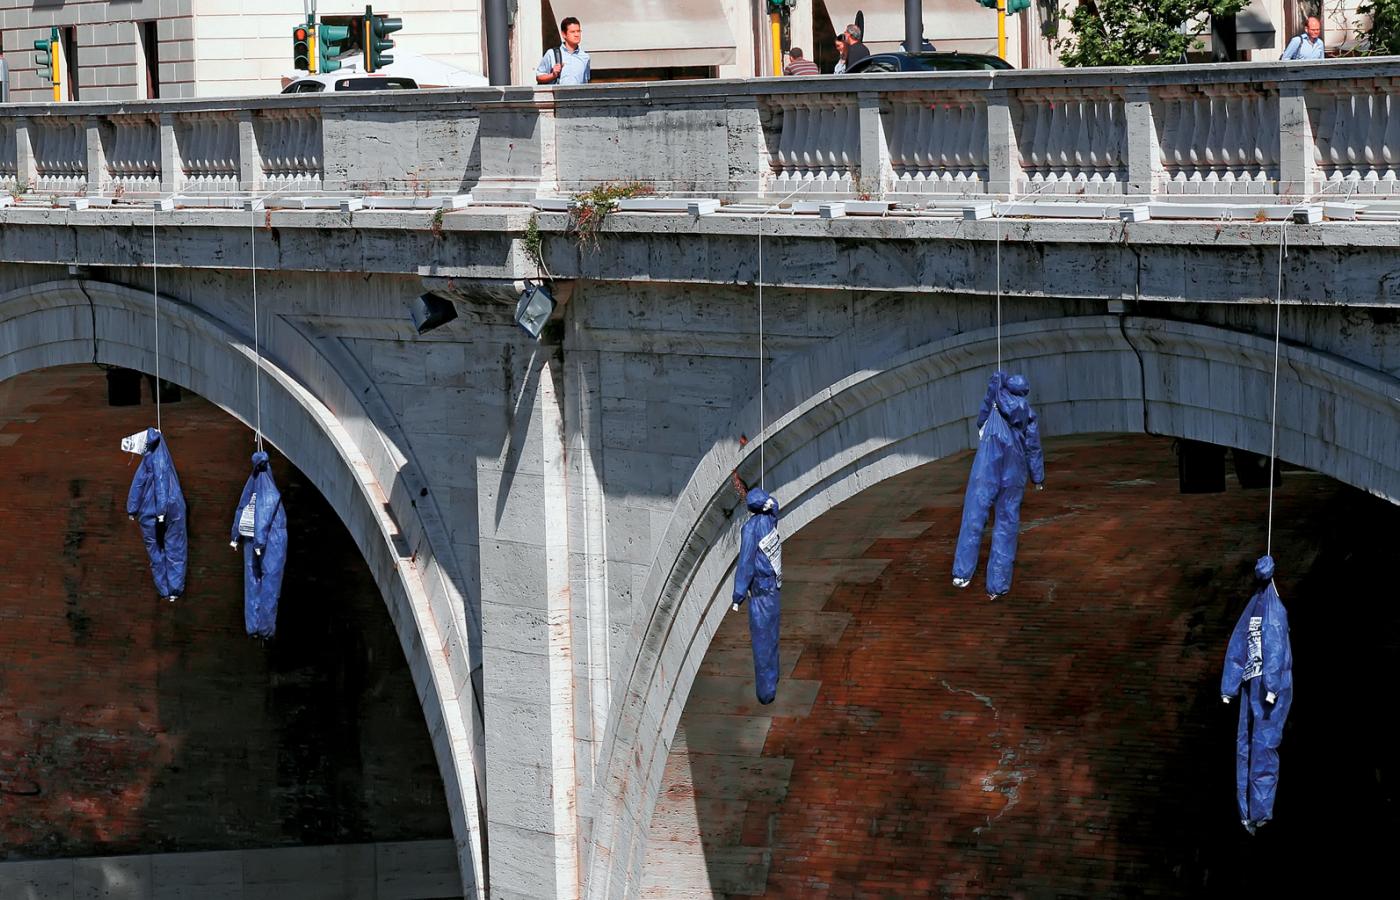 Happening organizacji La Destra w Rzymie. Powieszone kukły symbolizują ofiary włoskiego kryzysu.